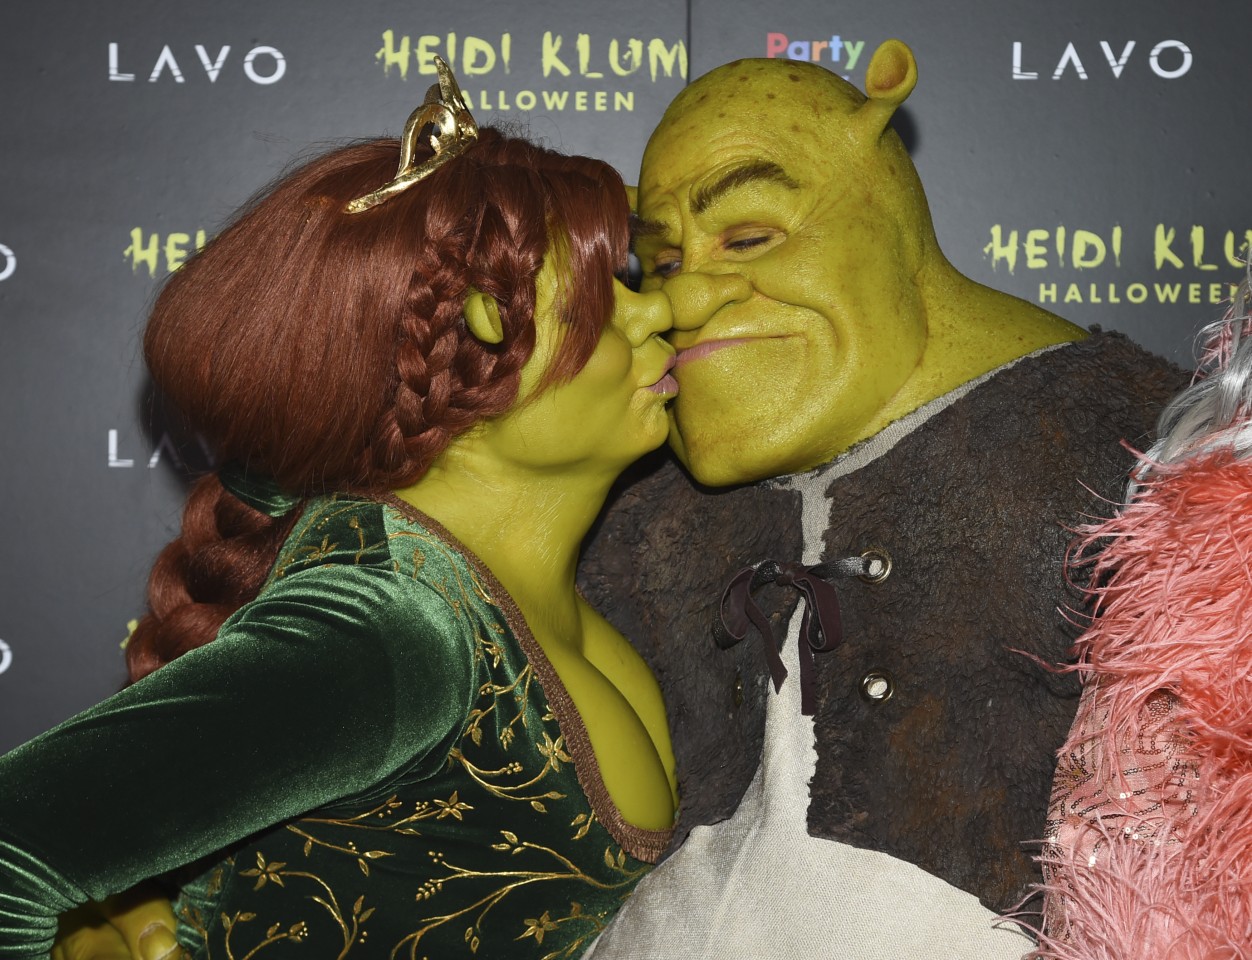 Heidi Klum und Tom Kaulitz verkleideten sich an Halloween als Shrek und Fiona.